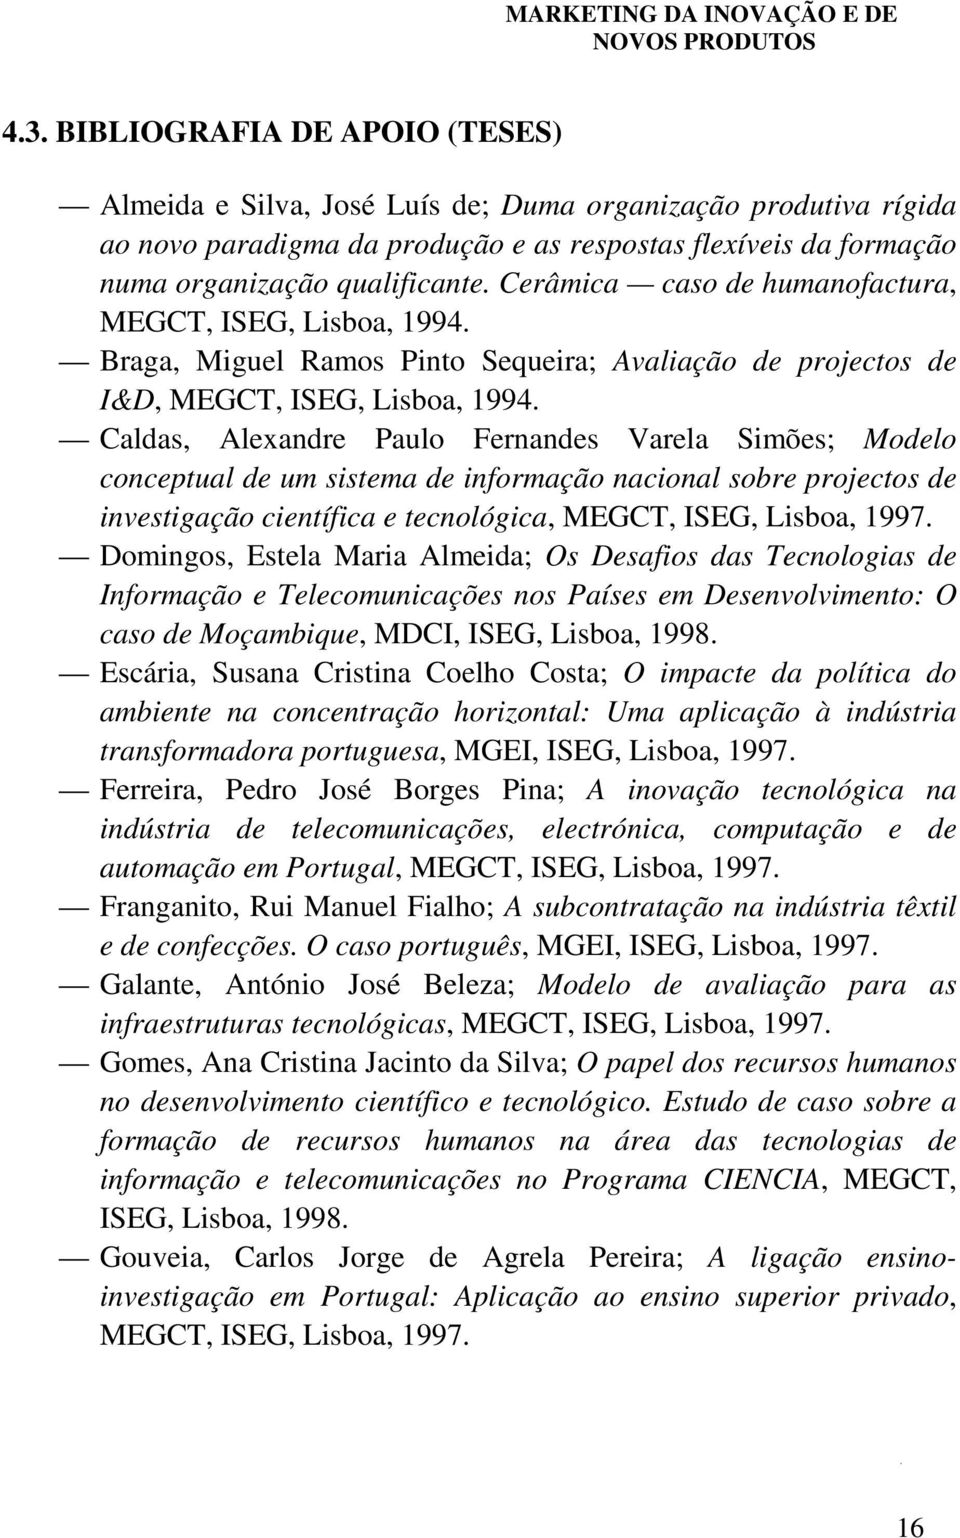 Caldas, Alexandre Paulo Fernandes Varela Simões; Modelo conceptual de um sistema de informação nacional sobre projectos de investigação científica e tecnológica, MEGCT, ISEG, Lisboa, 1997.